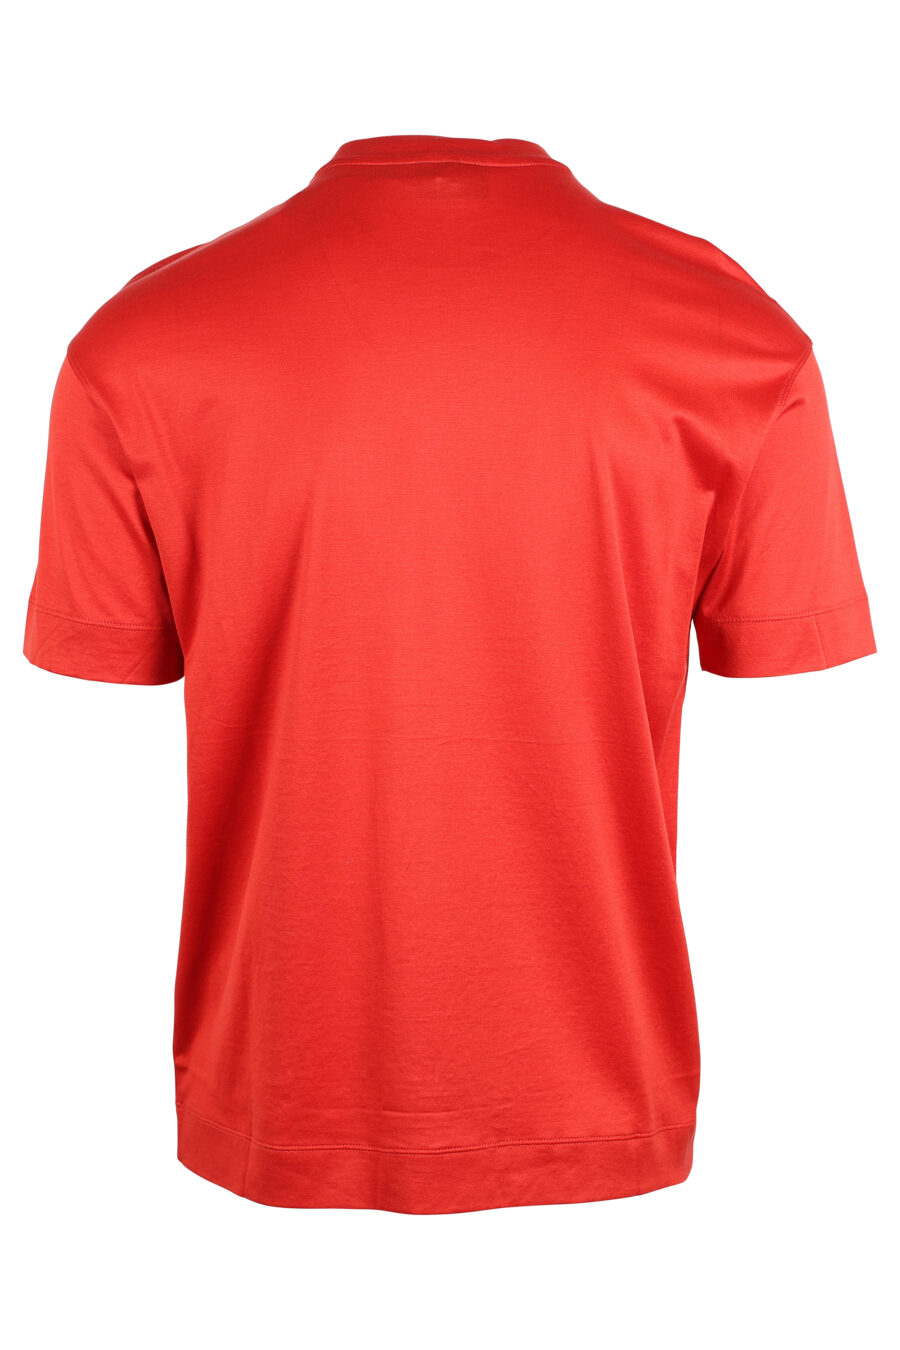 Camiseta roja con maxilogo monocromático - IMG 4746